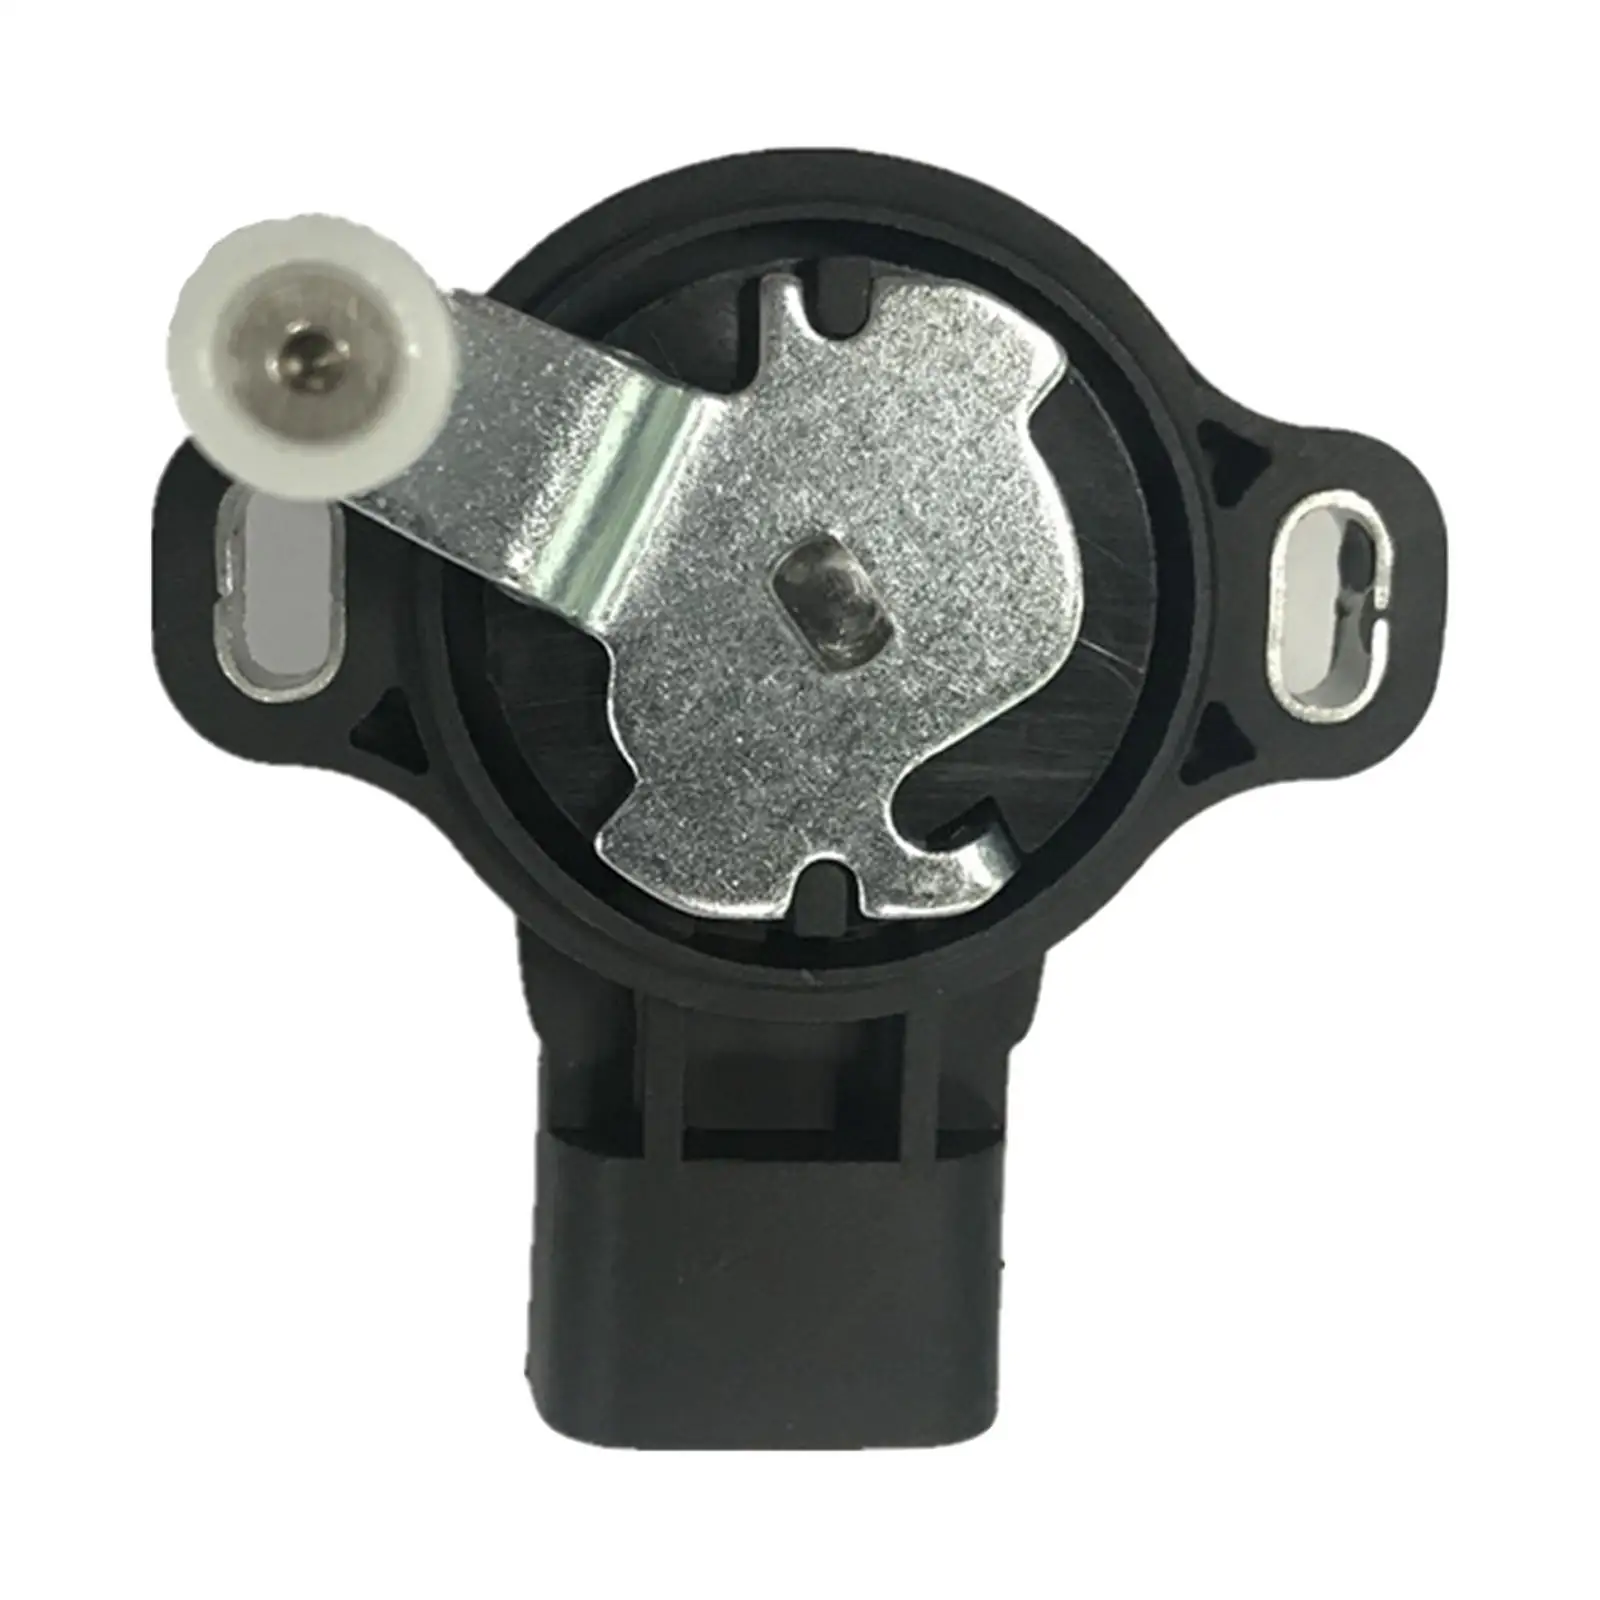 Car Throttle Position Sensor Plastic for Pick-Up D22 2.5 350Z Auto Parts Replaces ACC 18919-Vk500 18919VK500